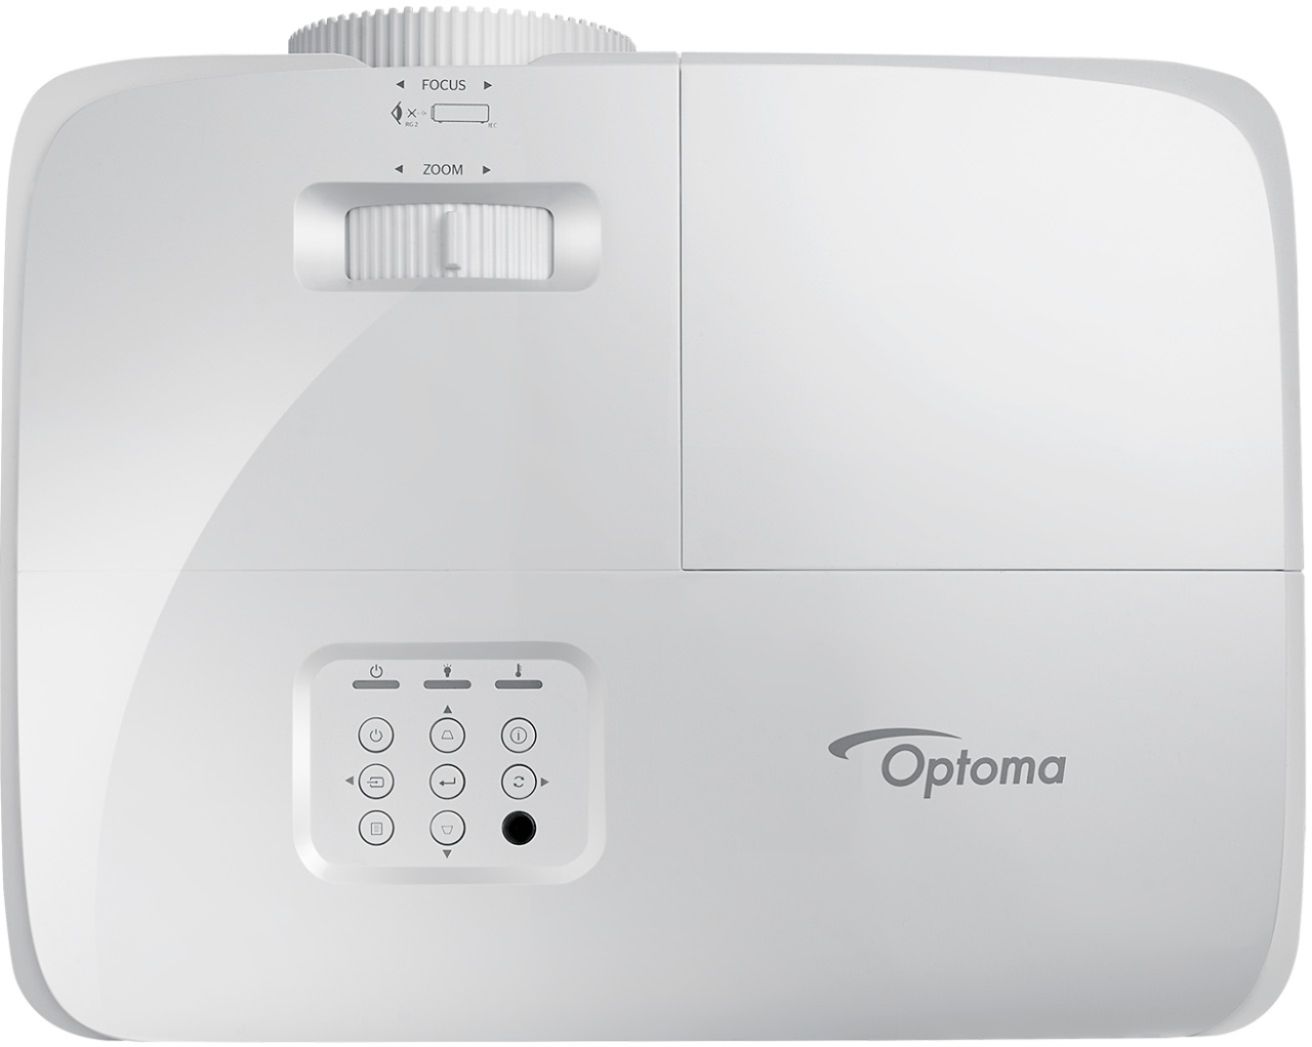 Comprá Proyector Optoma HD28HDR 3600 Lúmenes Full HD - Blanco - Envios a  todo el Paraguay